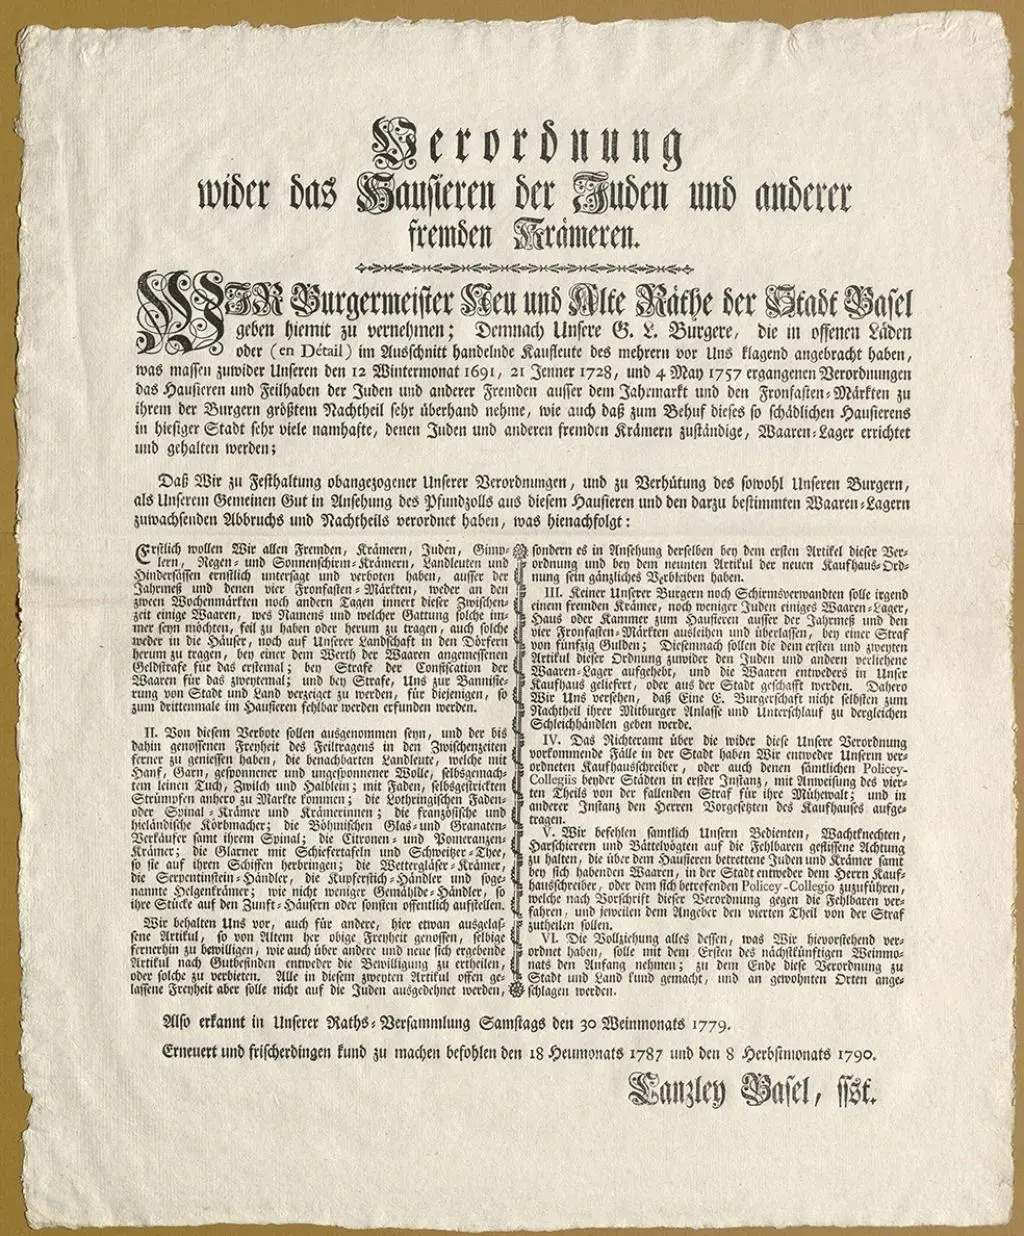 Mandat vom 08.09.1790 gegen das Hausieren der Juden und anderer fremder Krämer